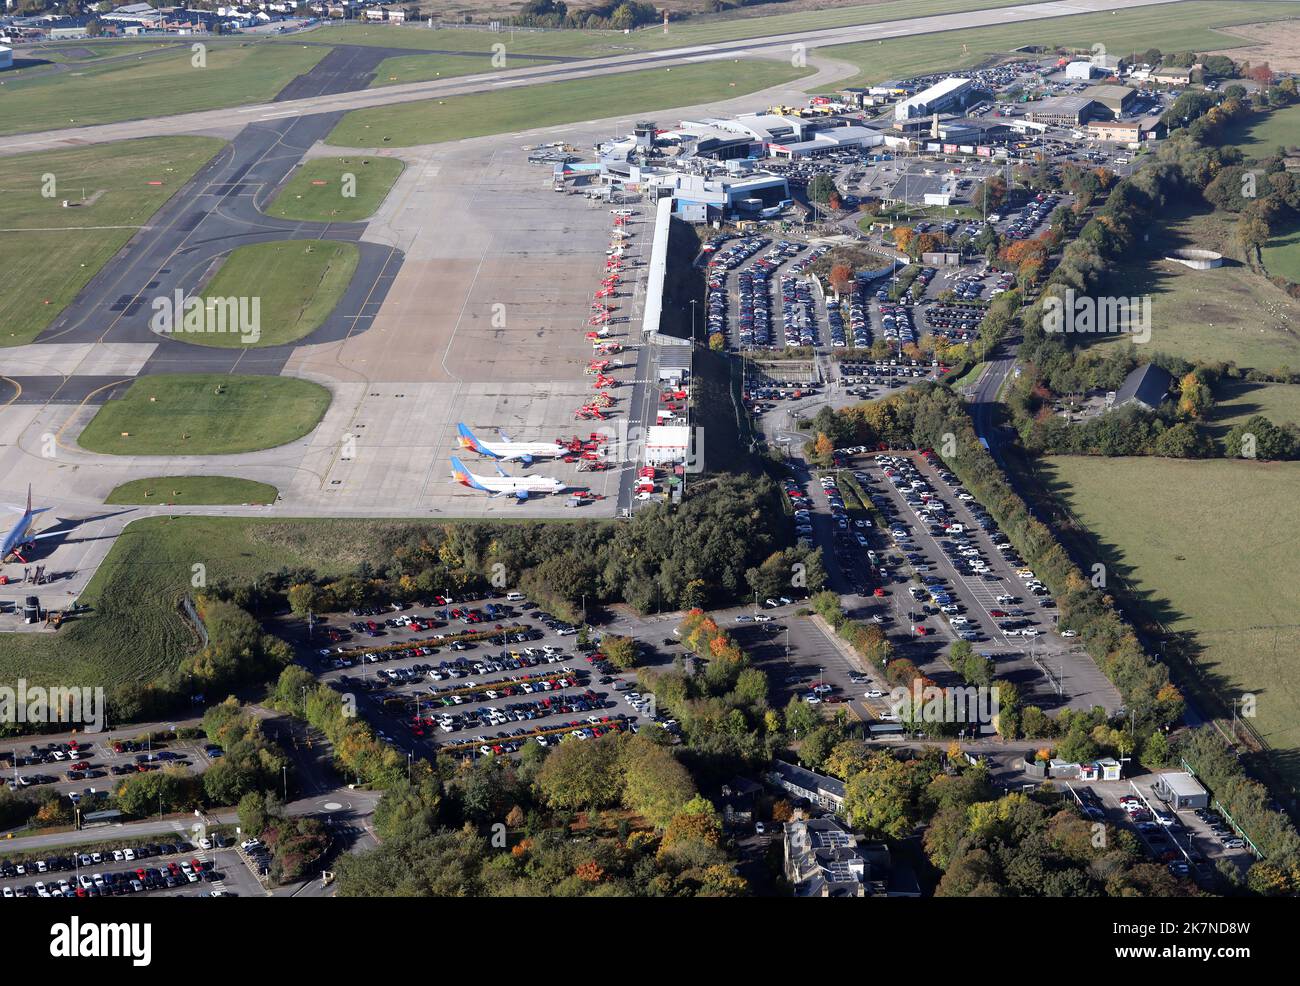 Vista aerea del parcheggio dell'aeroporto e del grembiule dell'aeroporto internazionale di Leeds Bradford, Regno Unito Foto Stock